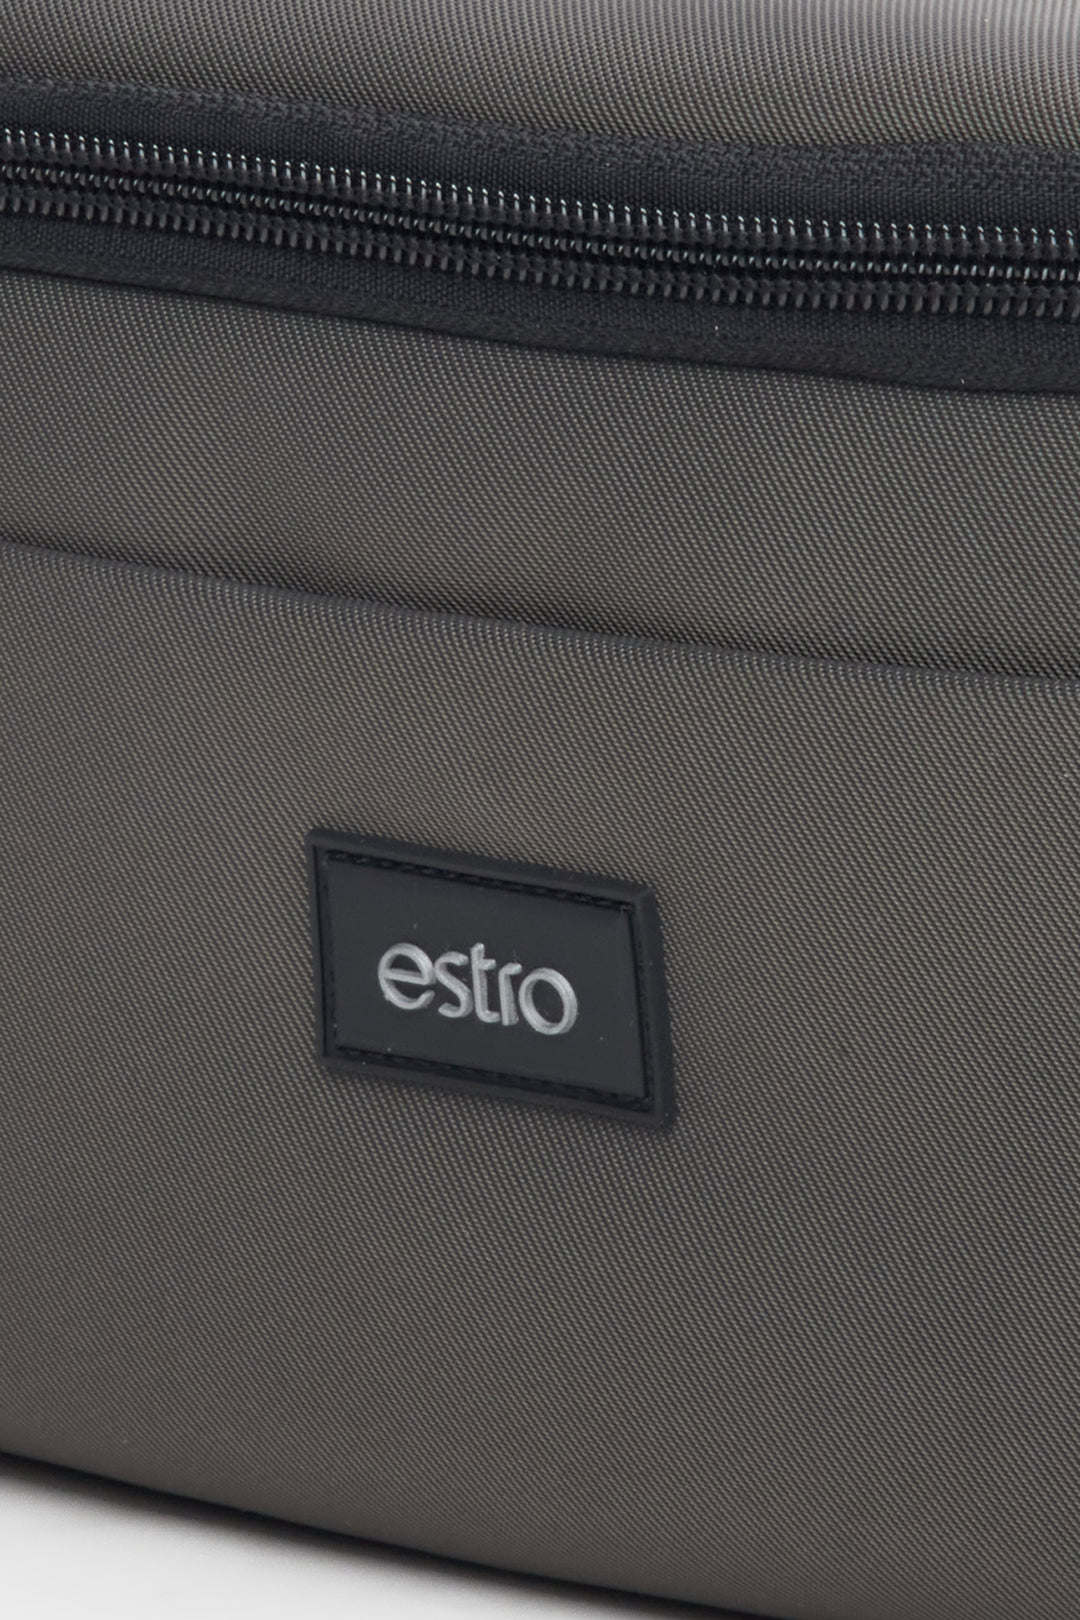 Men's dark grey waist bag by Estro - close-up on details.